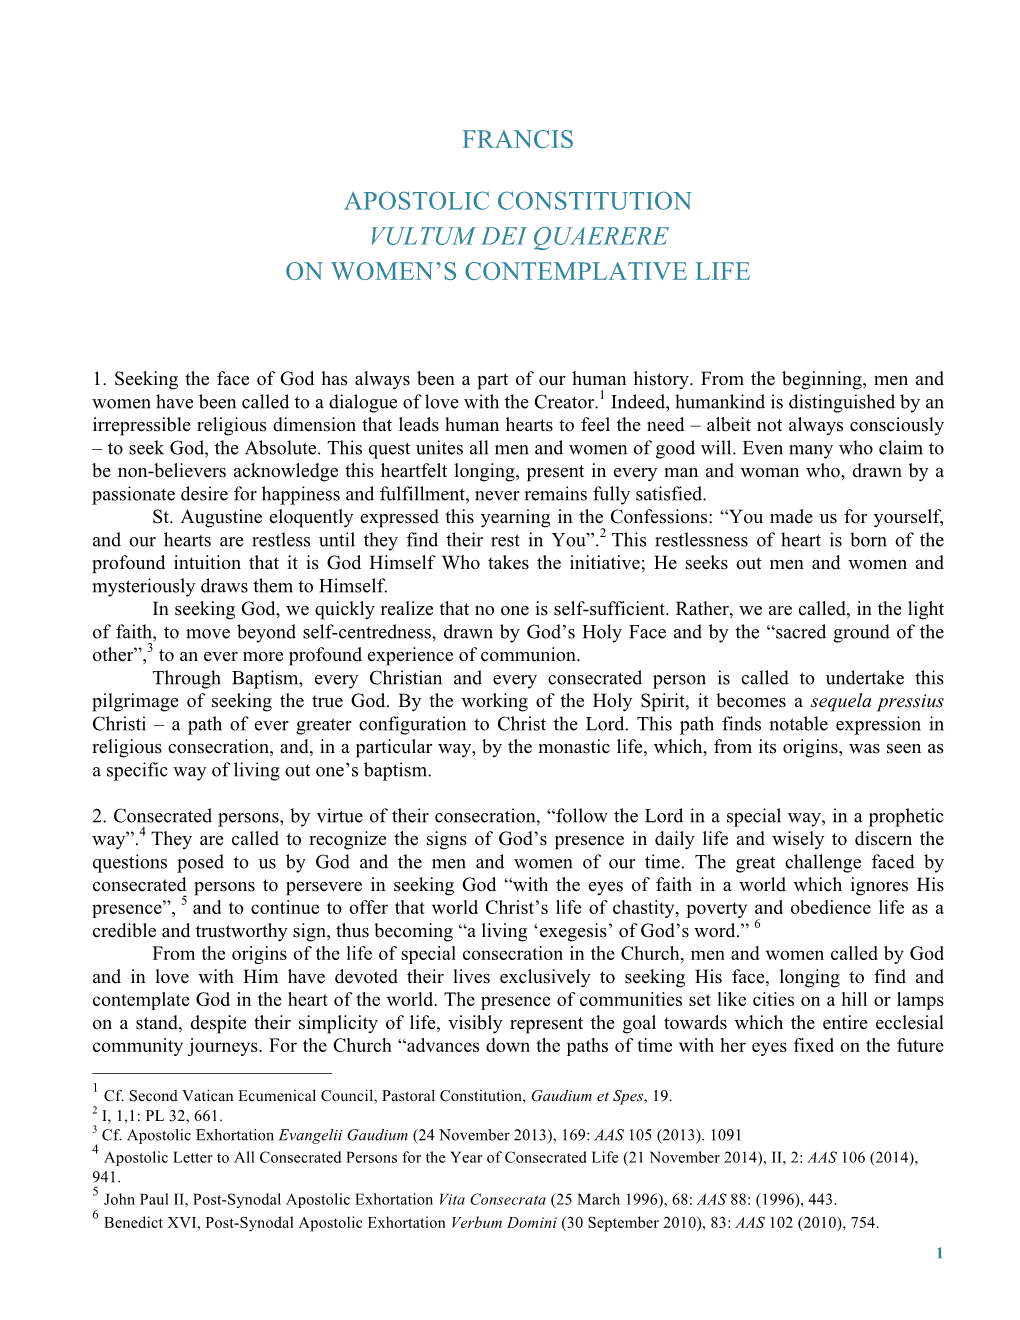 Francis Apostolic Constitution Vultum Dei